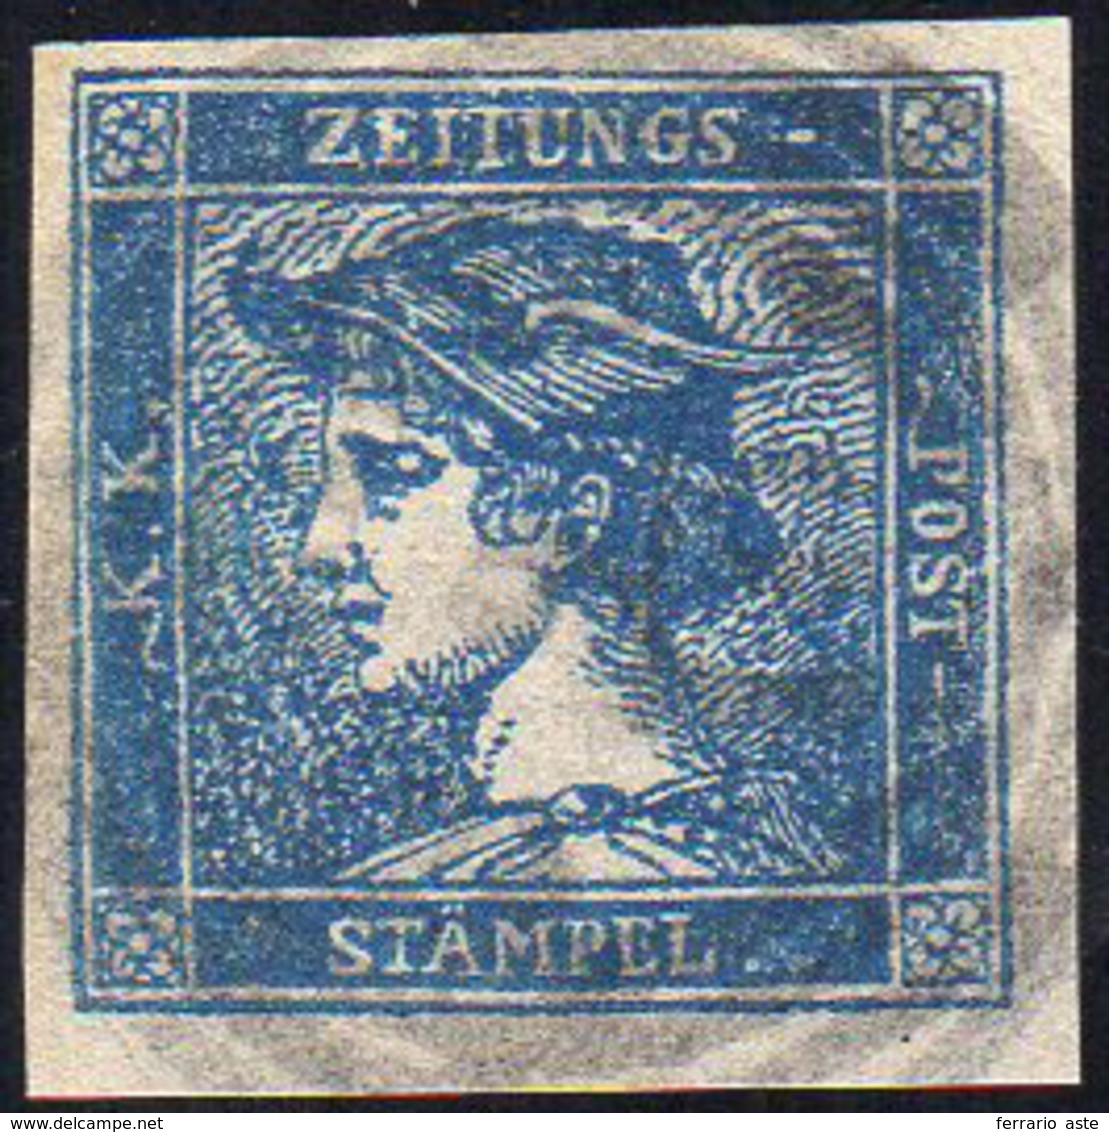 AUSTRIA FRANCOBOLLI PER GIORNALI 1851 - 0,6 K. Mercurio Azzurro, III Tipo (1b), Usato, Perfetto. Ray... - Autres - Europe